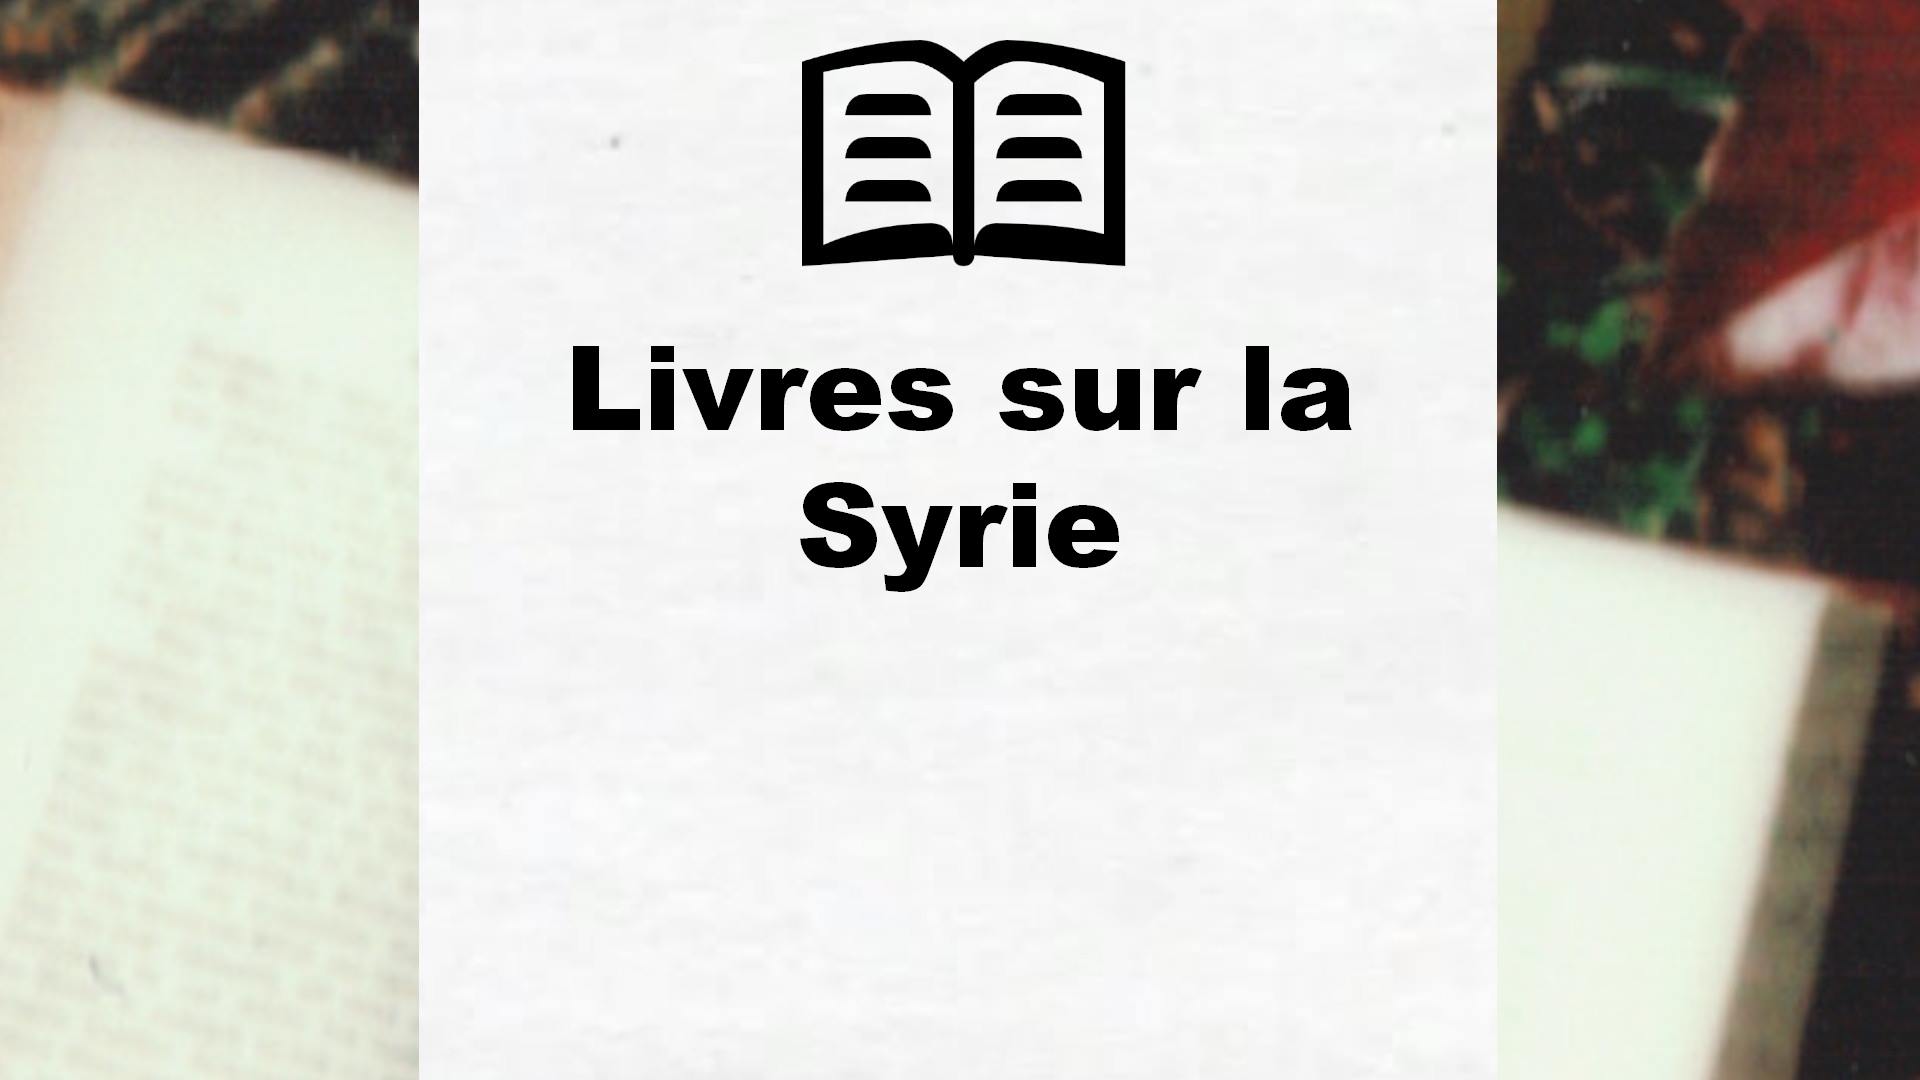 Livres sur la Syrie